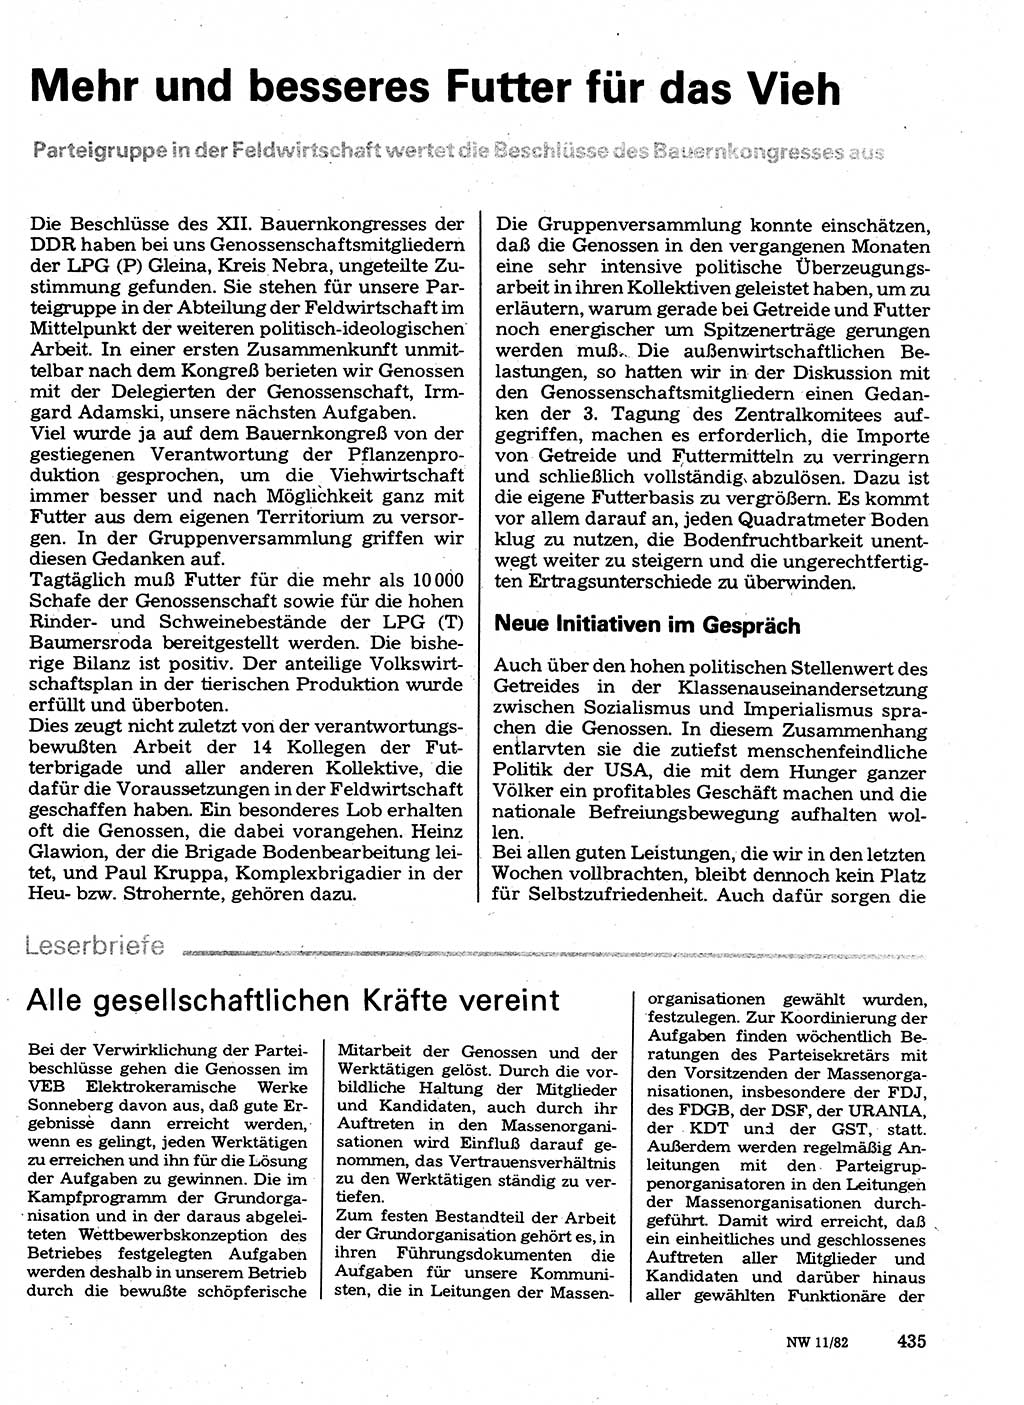 Neuer Weg (NW), Organ des Zentralkomitees (ZK) der SED (Sozialistische Einheitspartei Deutschlands) für Fragen des Parteilebens, 37. Jahrgang [Deutsche Demokratische Republik (DDR)] 1982, Seite 435 (NW ZK SED DDR 1982, S. 435)